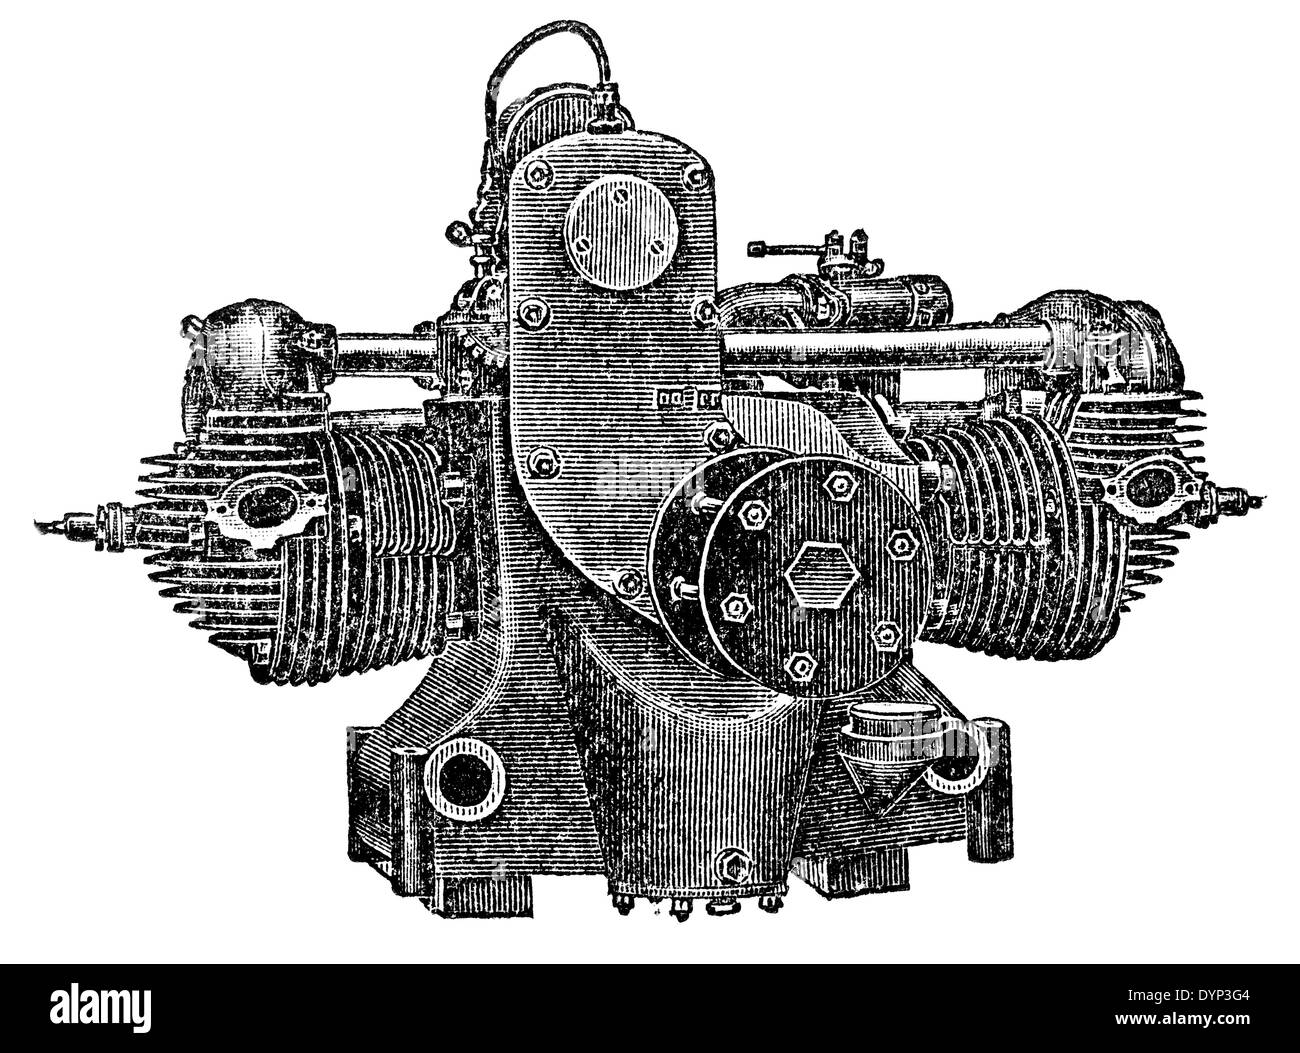 Querubín aeroengine (1923) por Bristol Motor Co, ilustración de la Enciclopedia soviética, 1926 Foto de stock